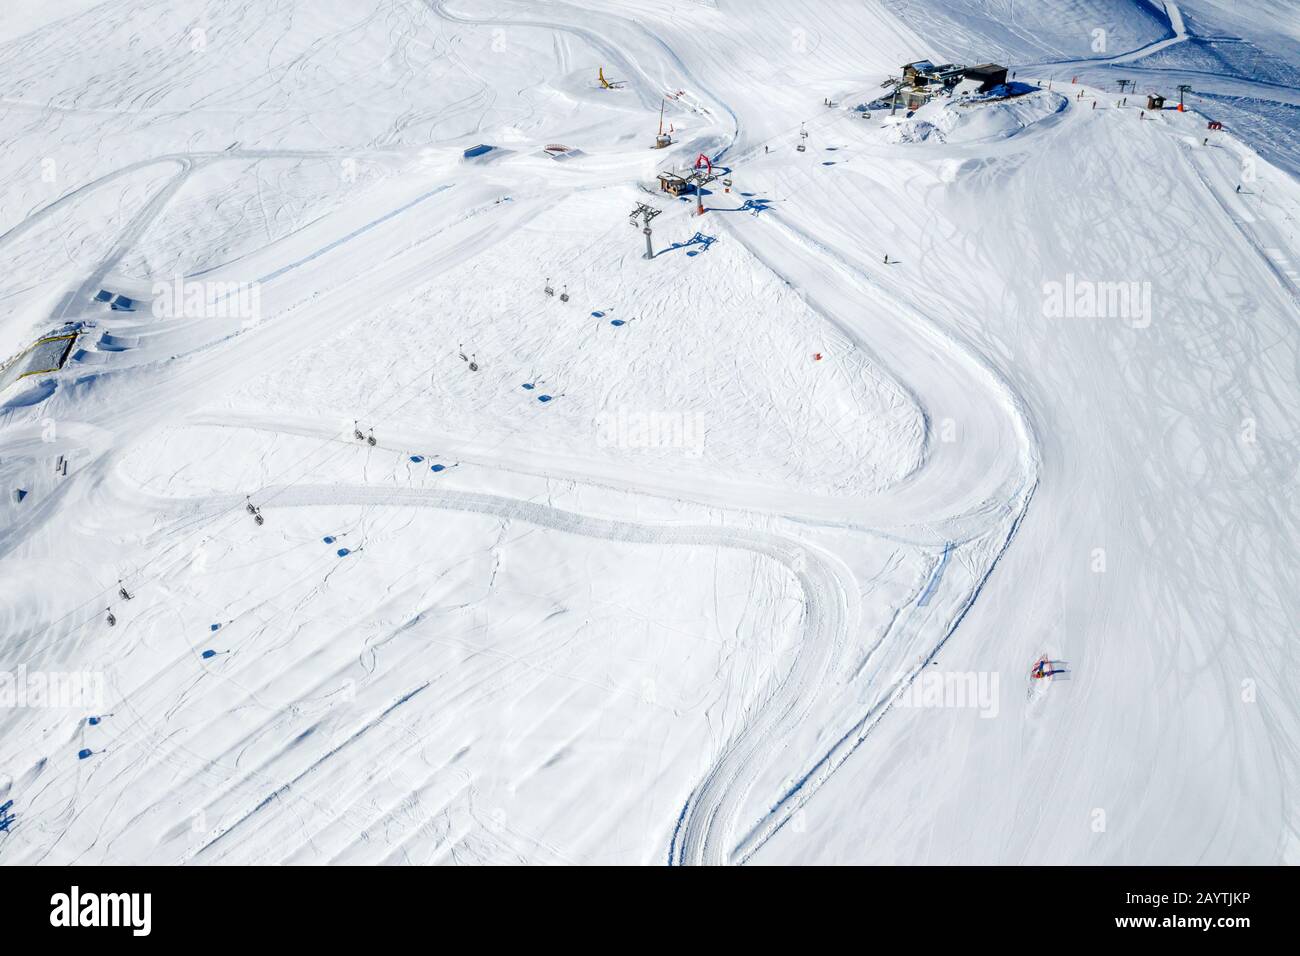 Drone view of mountain ski slopes. Stock Photo